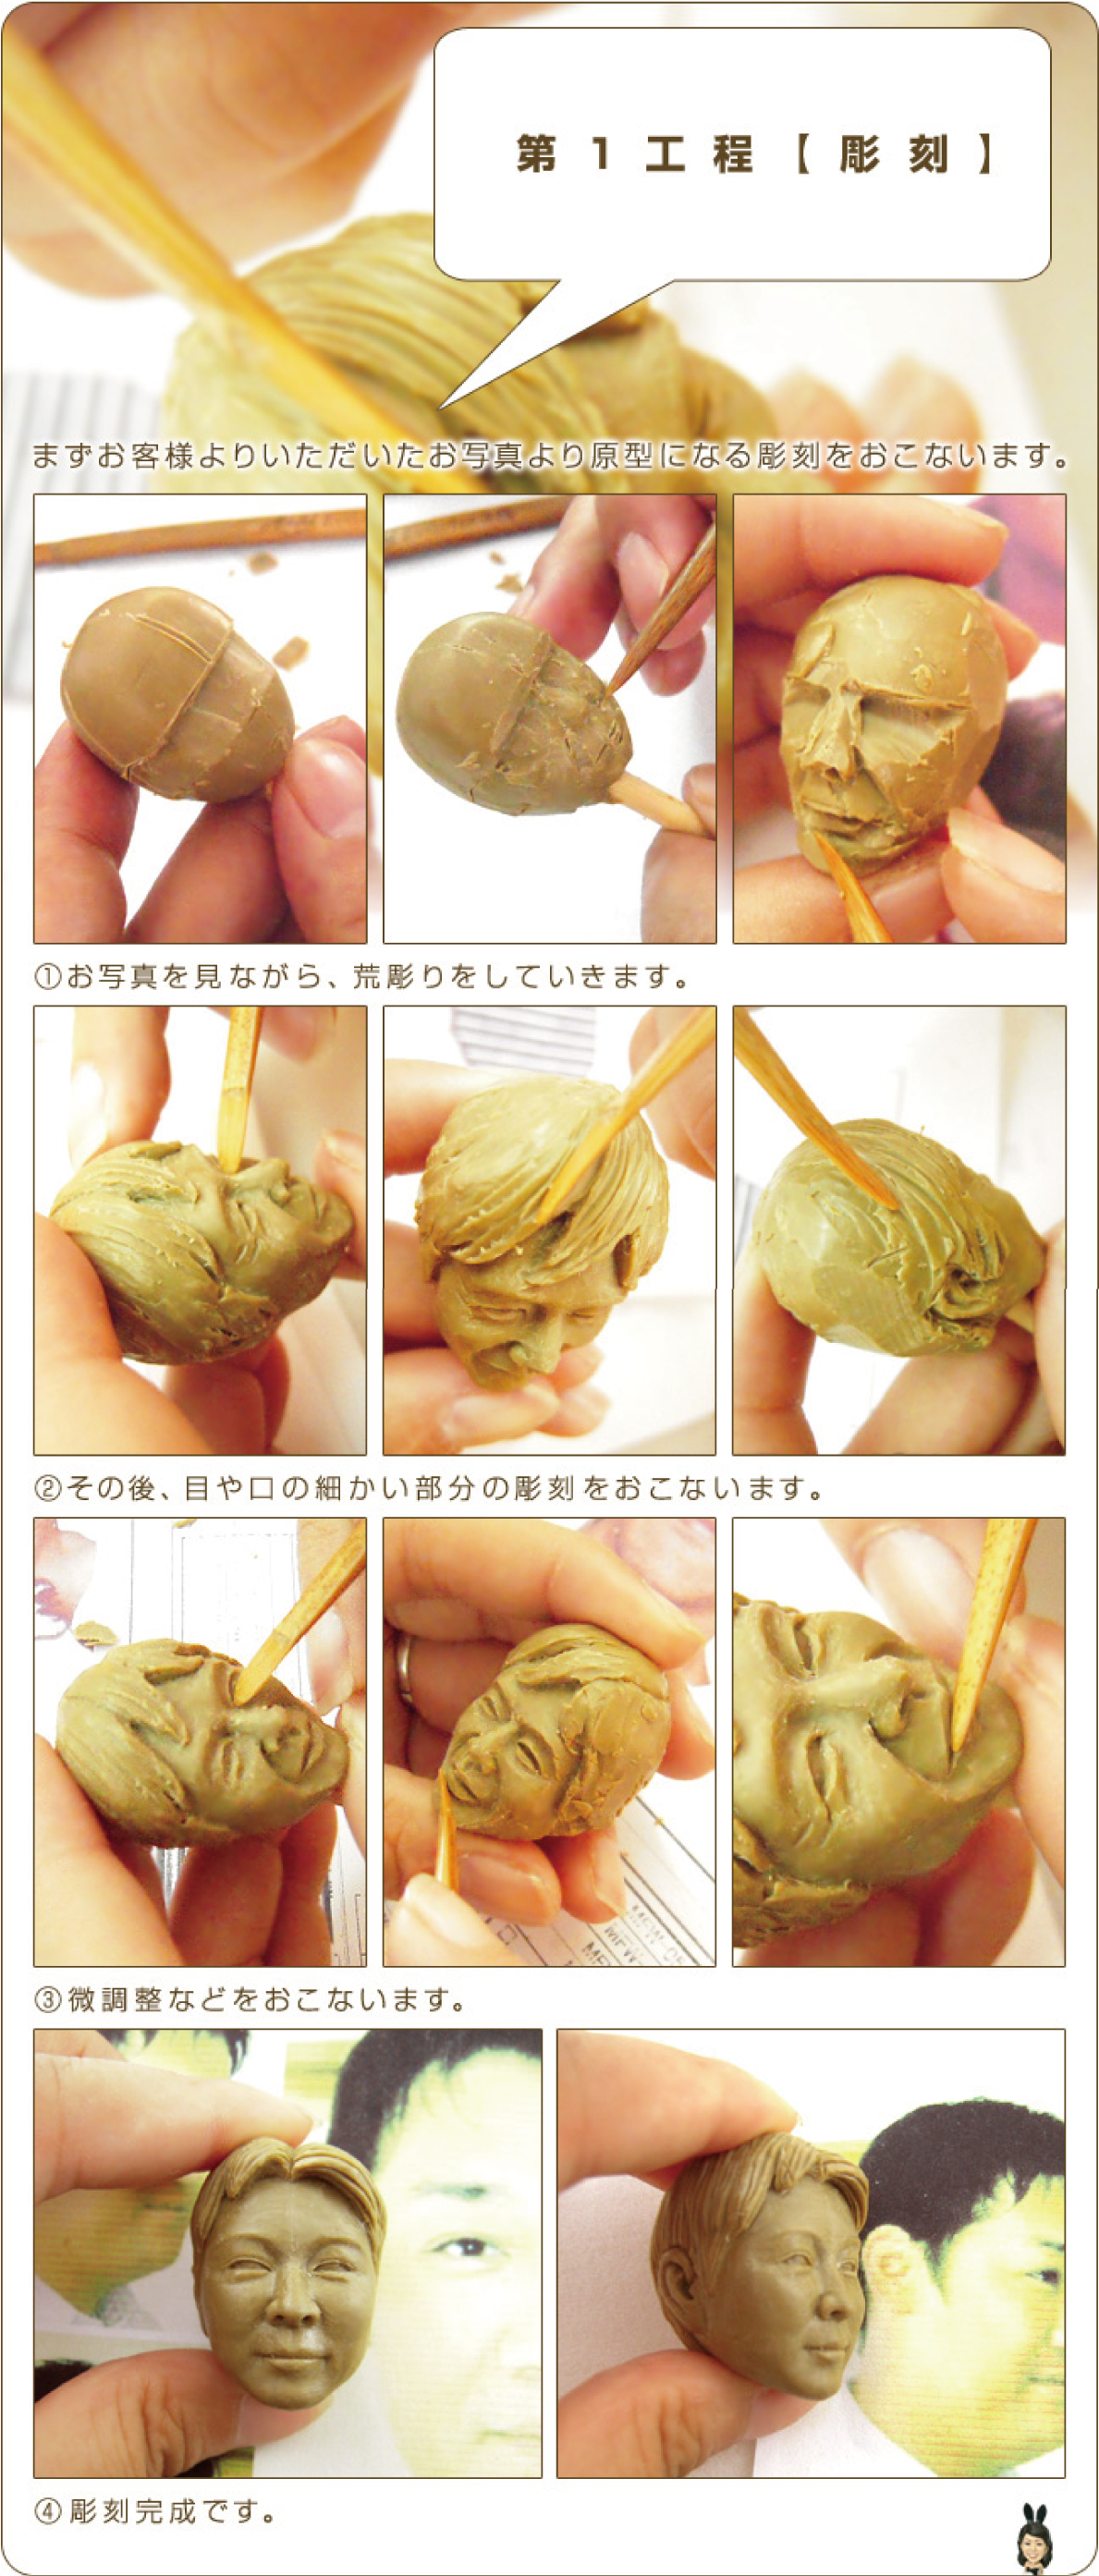 人形作業工程1 写真を見ながら顔を彫刻